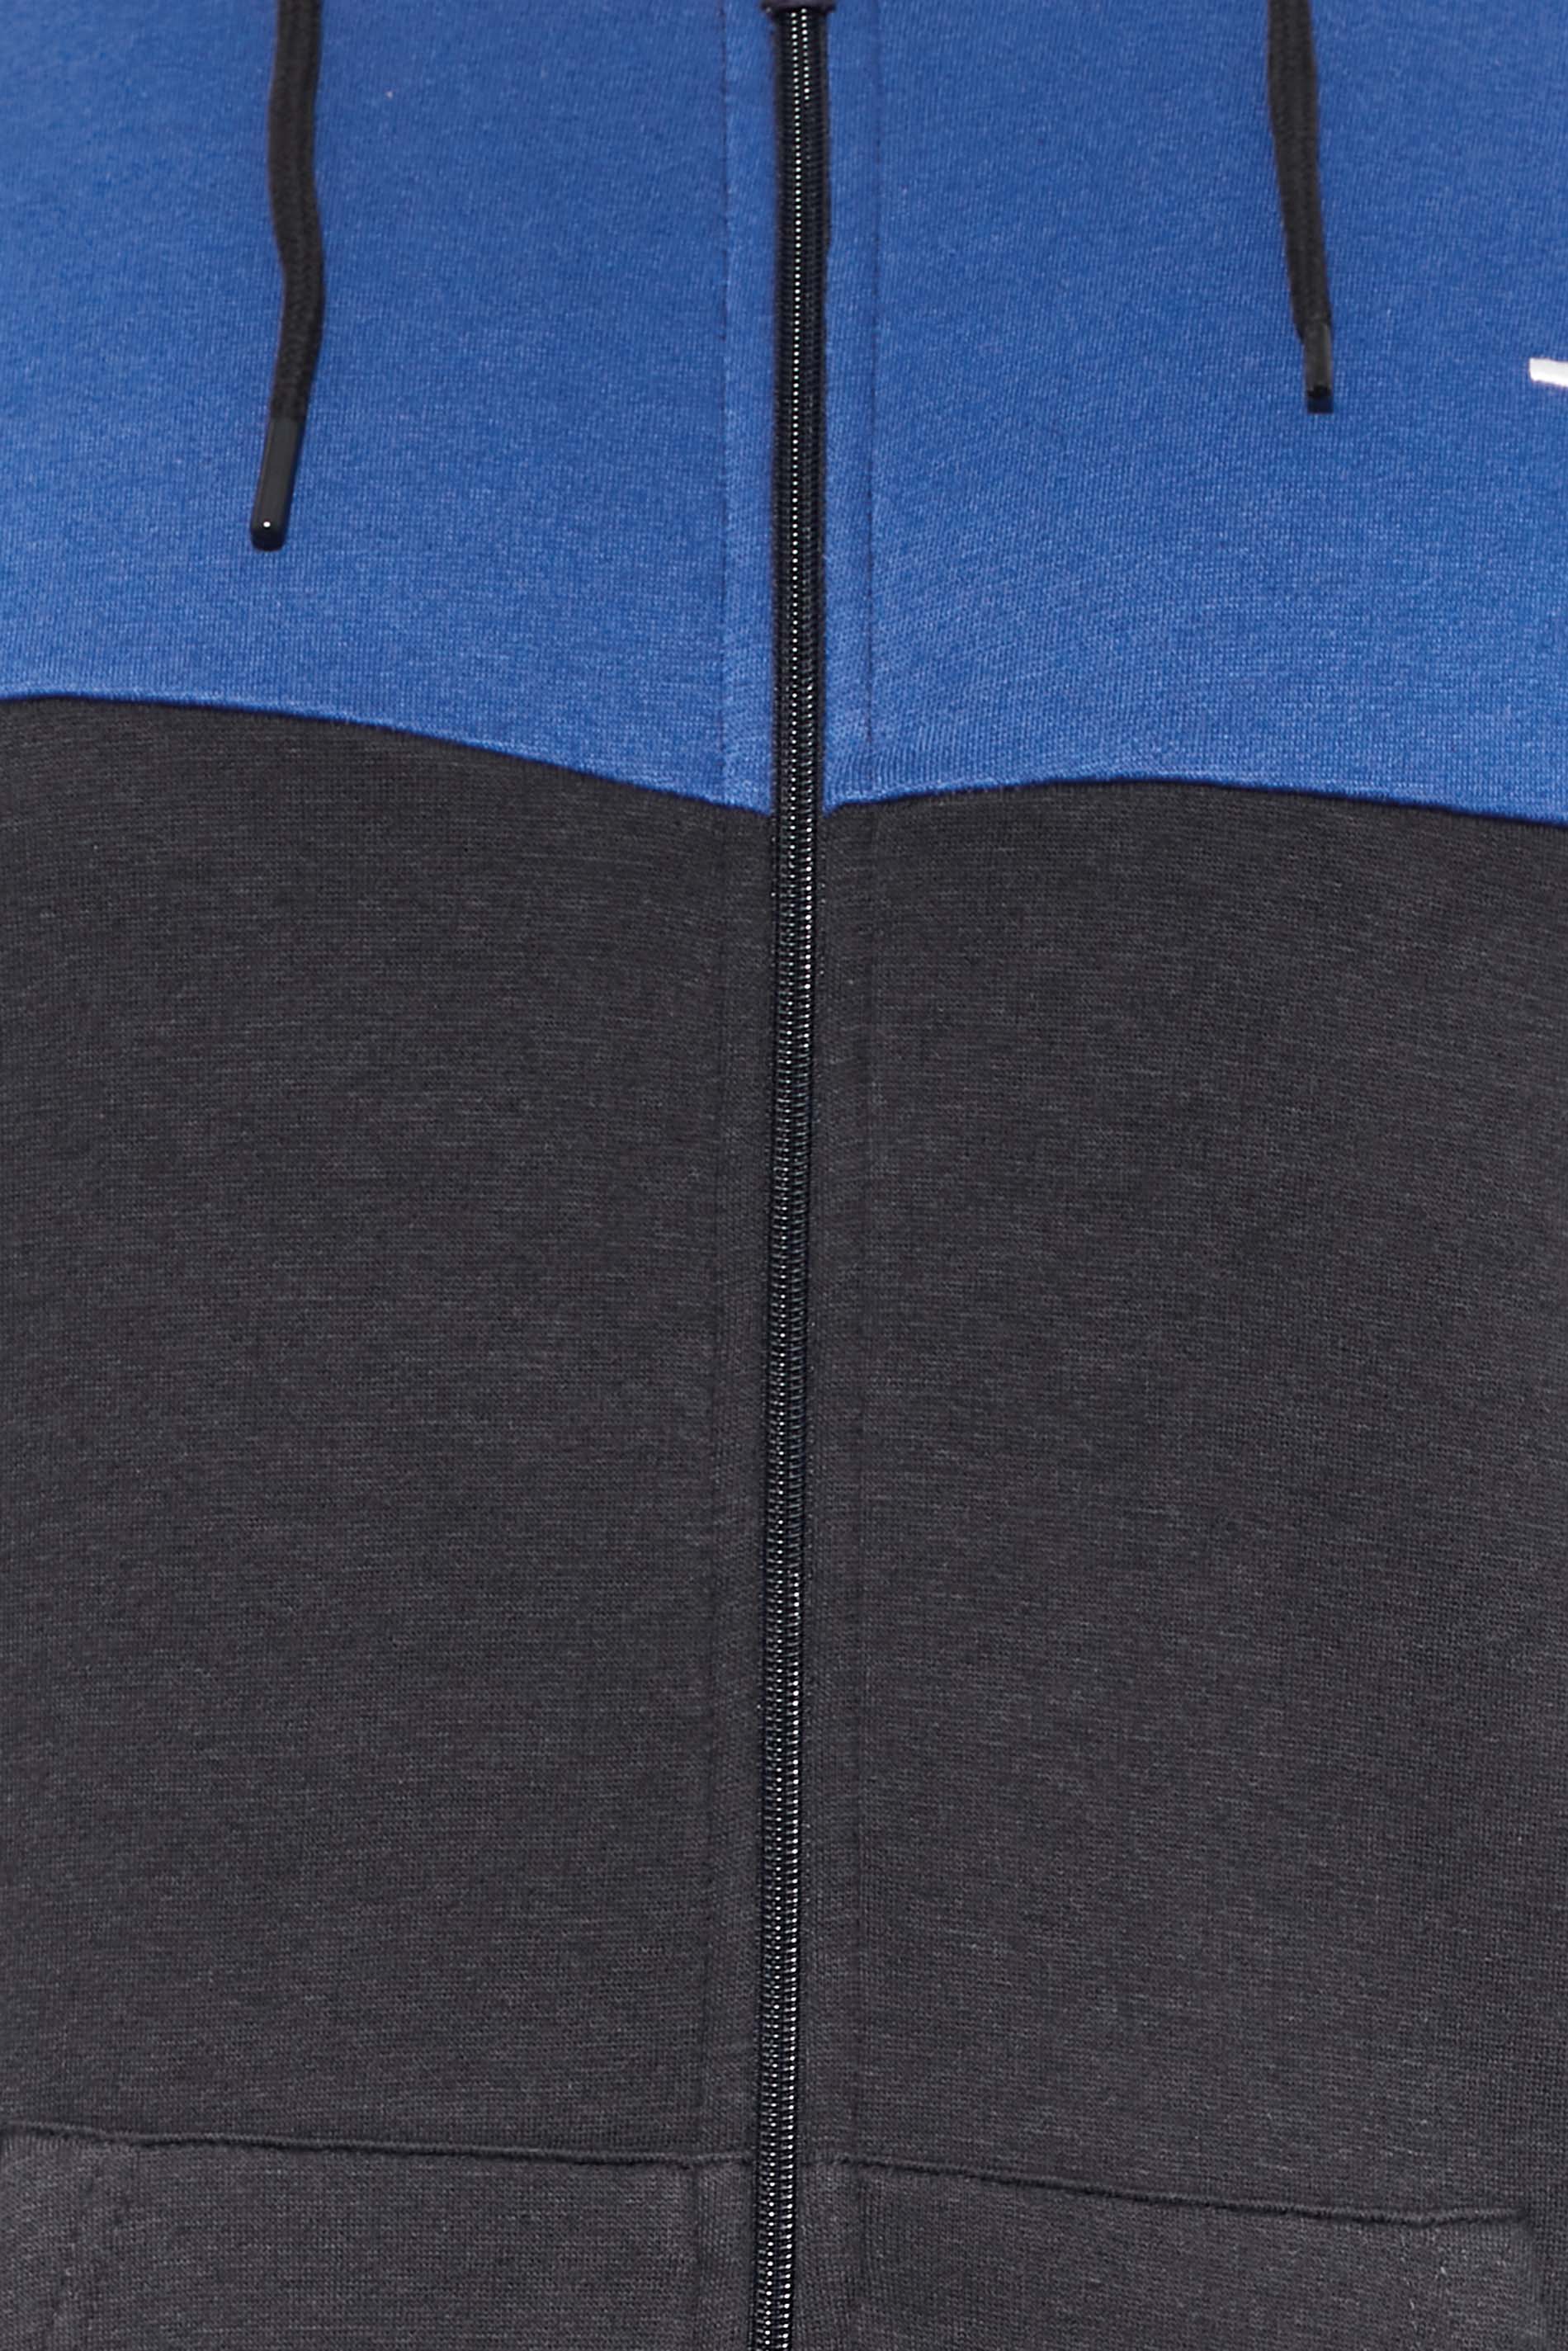 BadRhino Big & Tall Navy Blue Cut & Sew Zip Through Hoodie | BadRhino 2